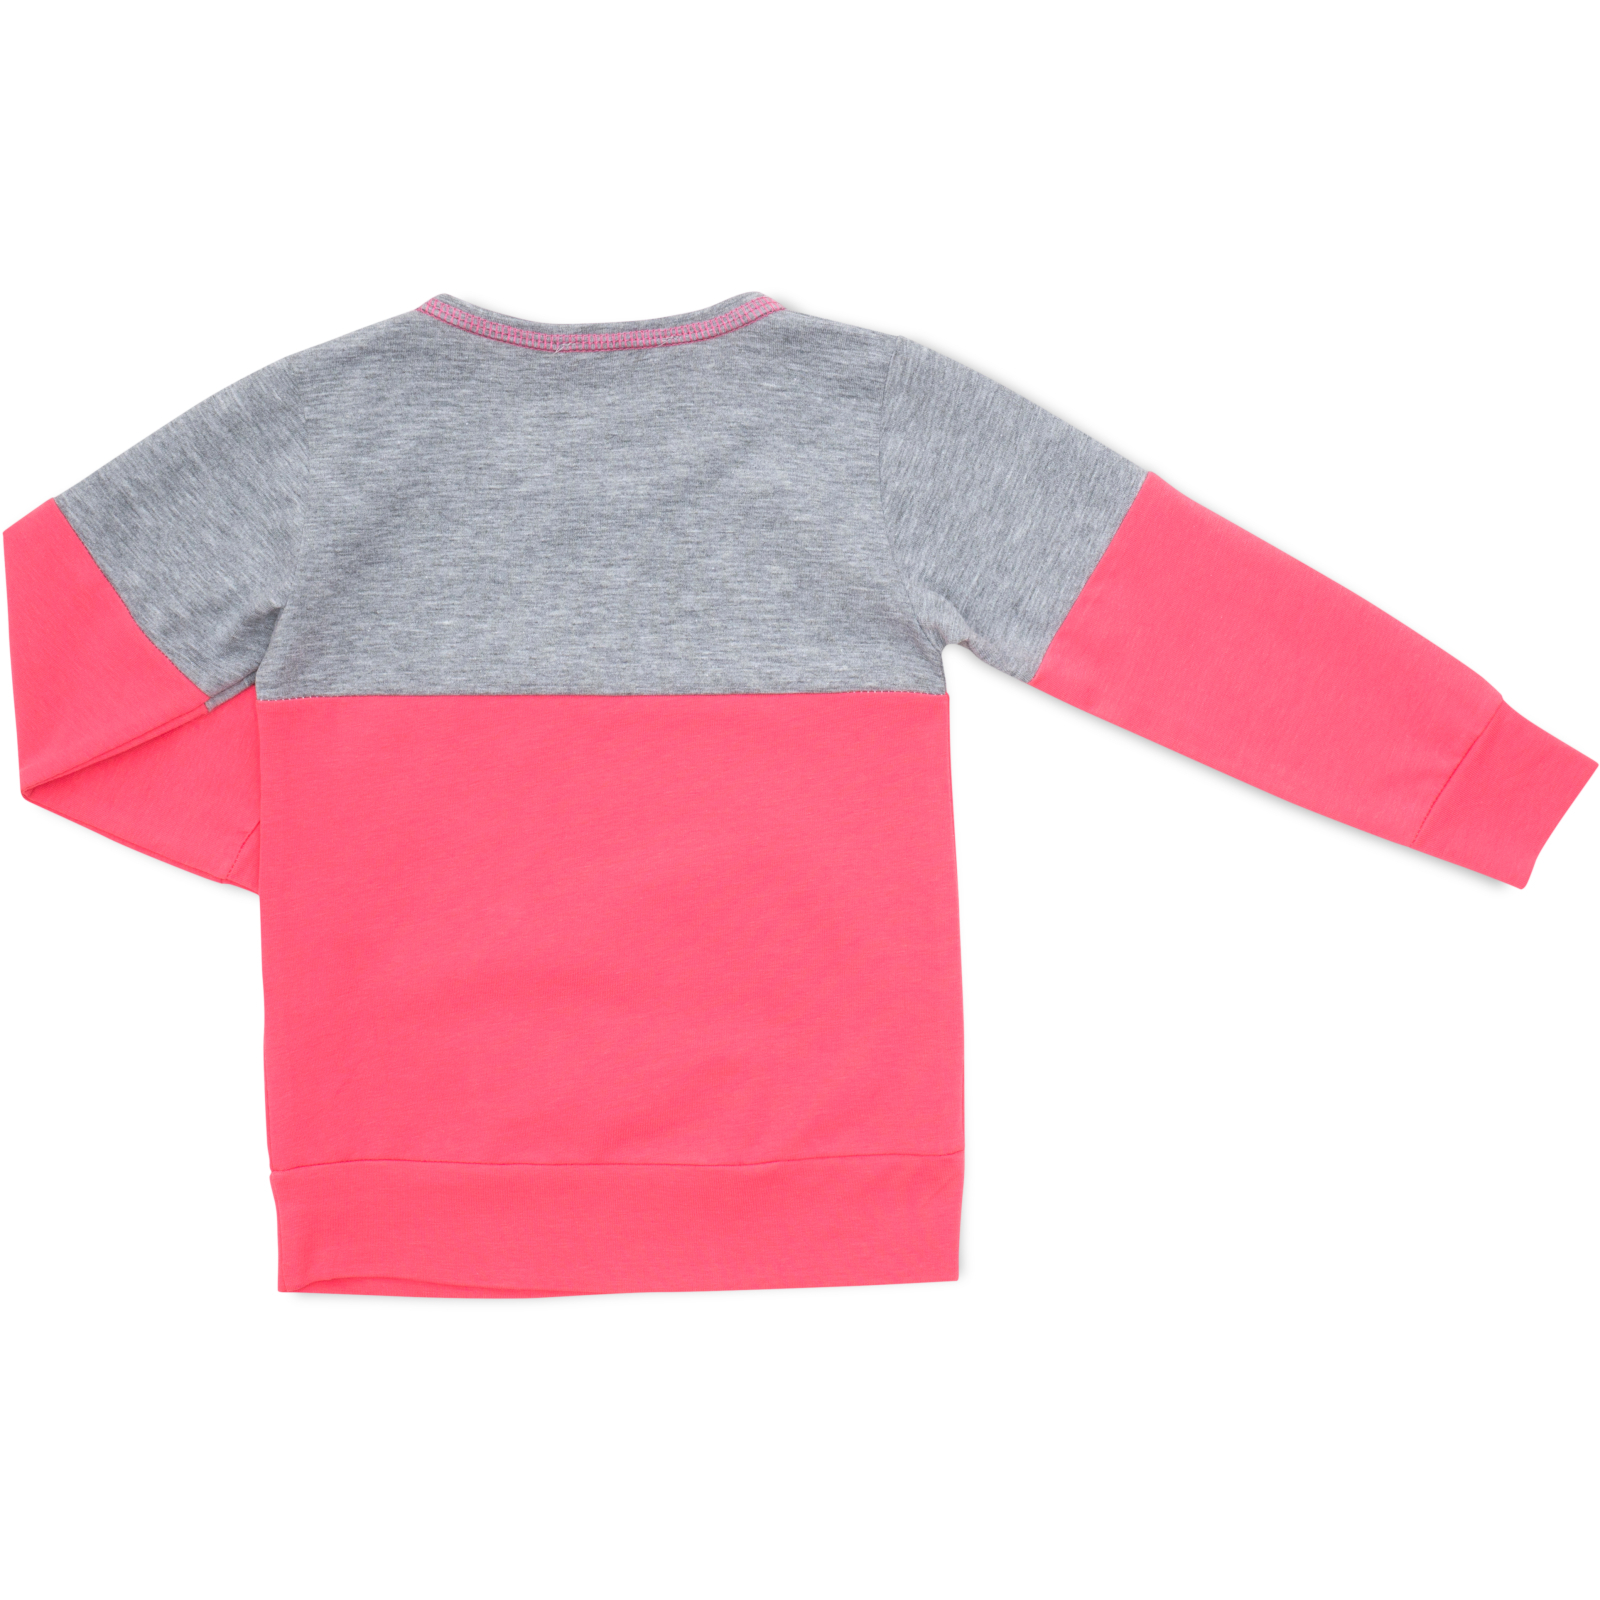 Пижама Matilda со звездочками (7167-104G-pink) изображение 5